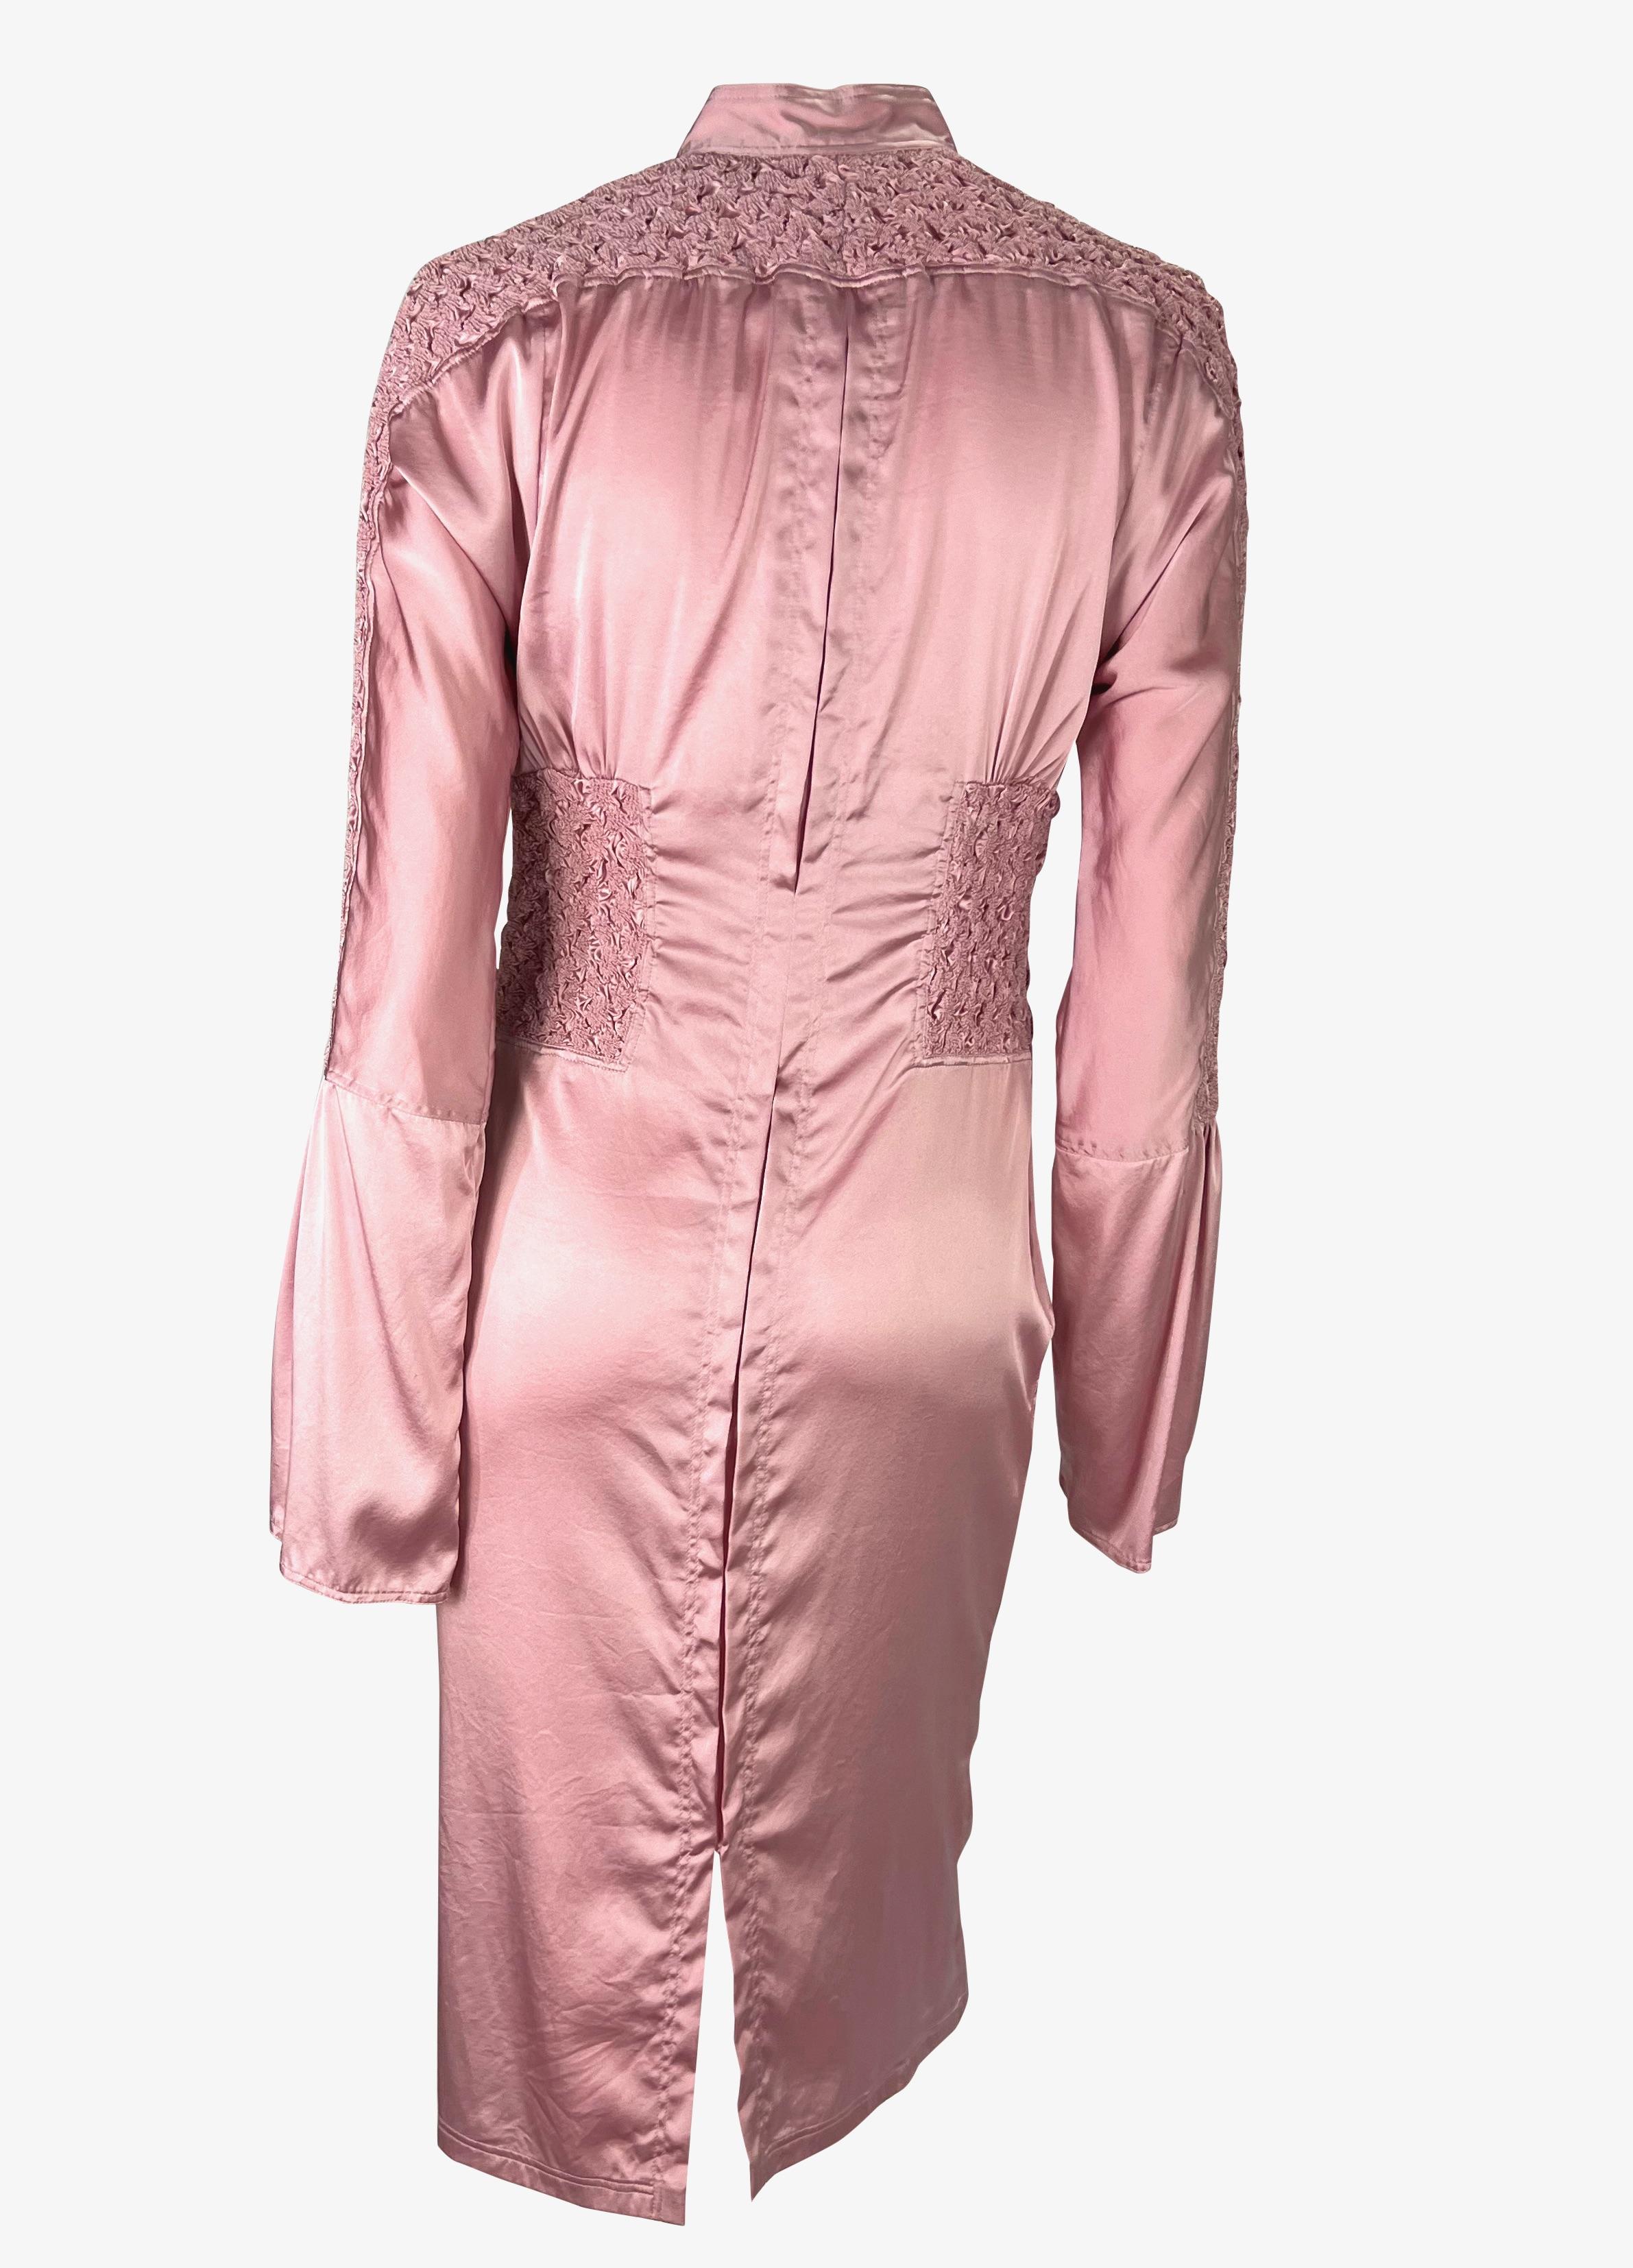 F/S 2004 Gucci by Tom Ford gerafftes rosa Satin-Broschekleid mit Strasssteinen in Strass Damen im Angebot